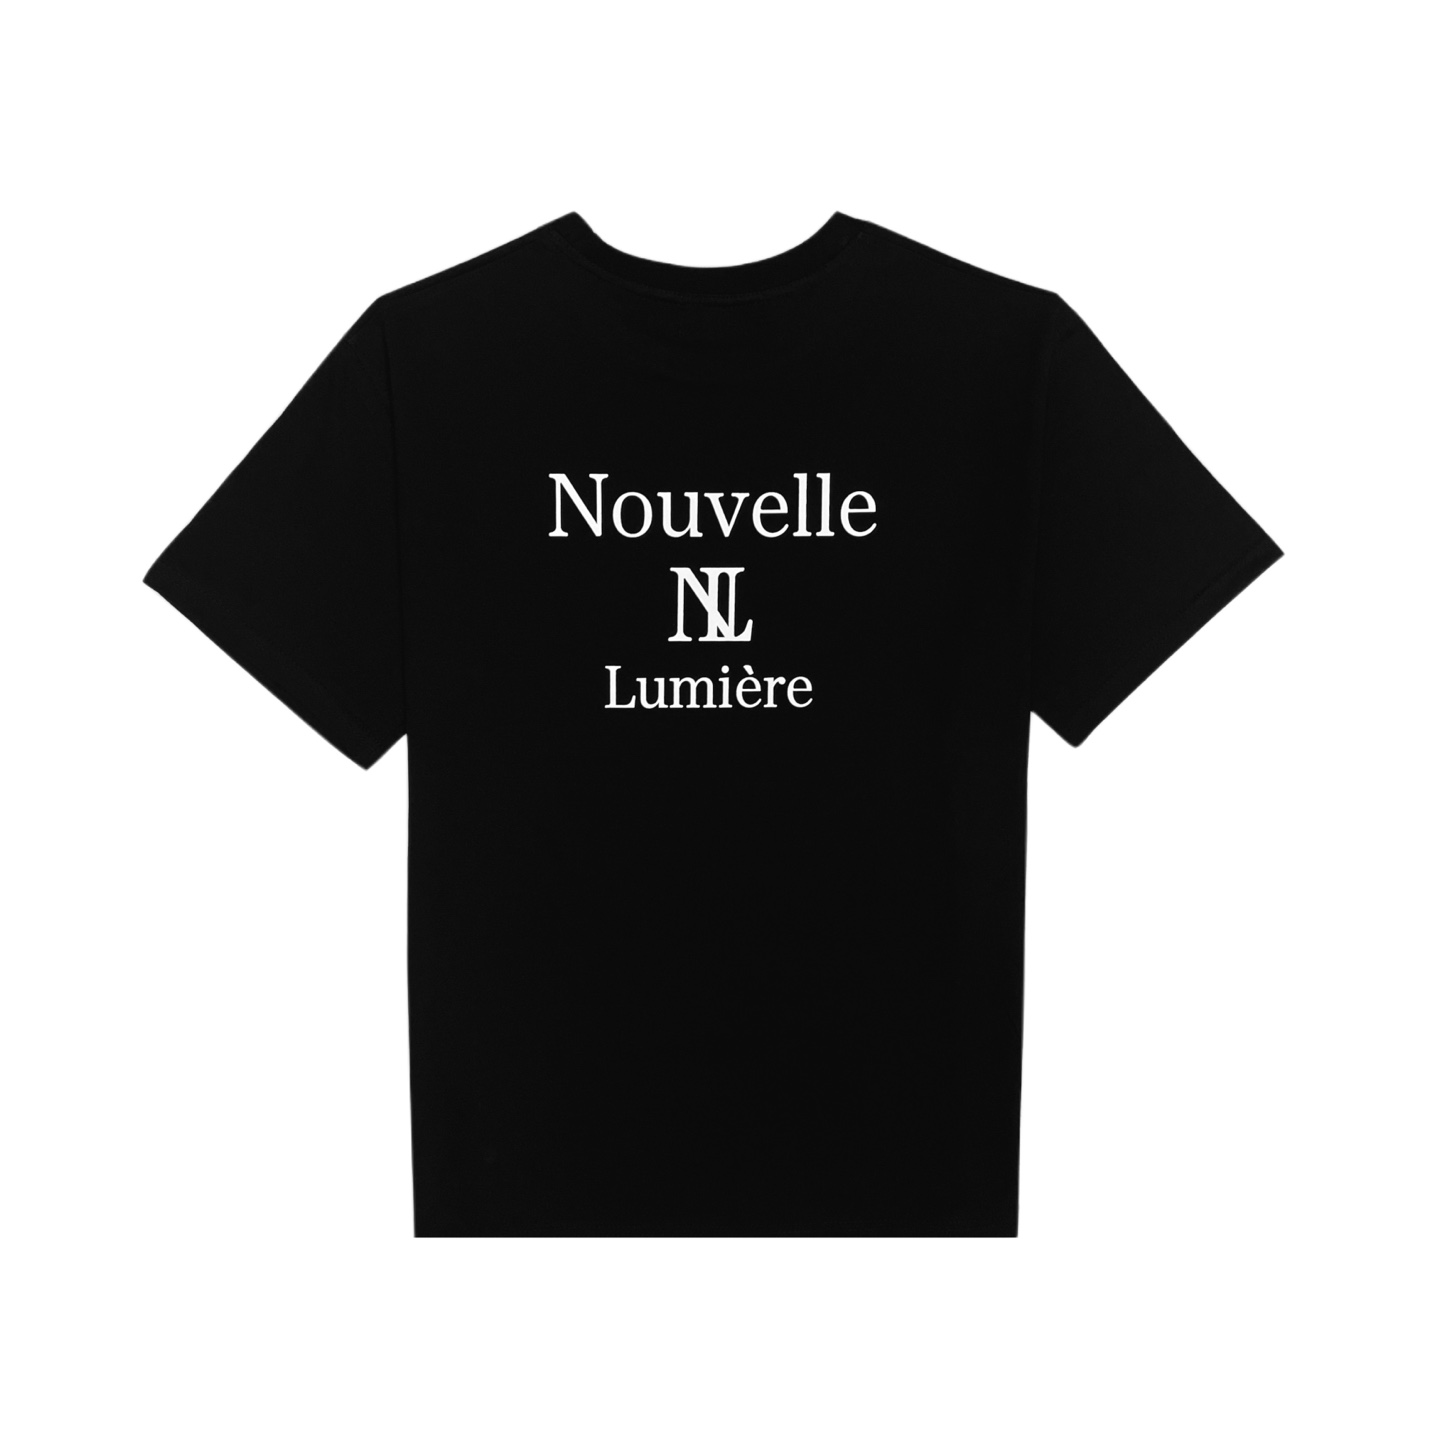 Nubelmiere Acro Black Short-Sleeved T-Shirt